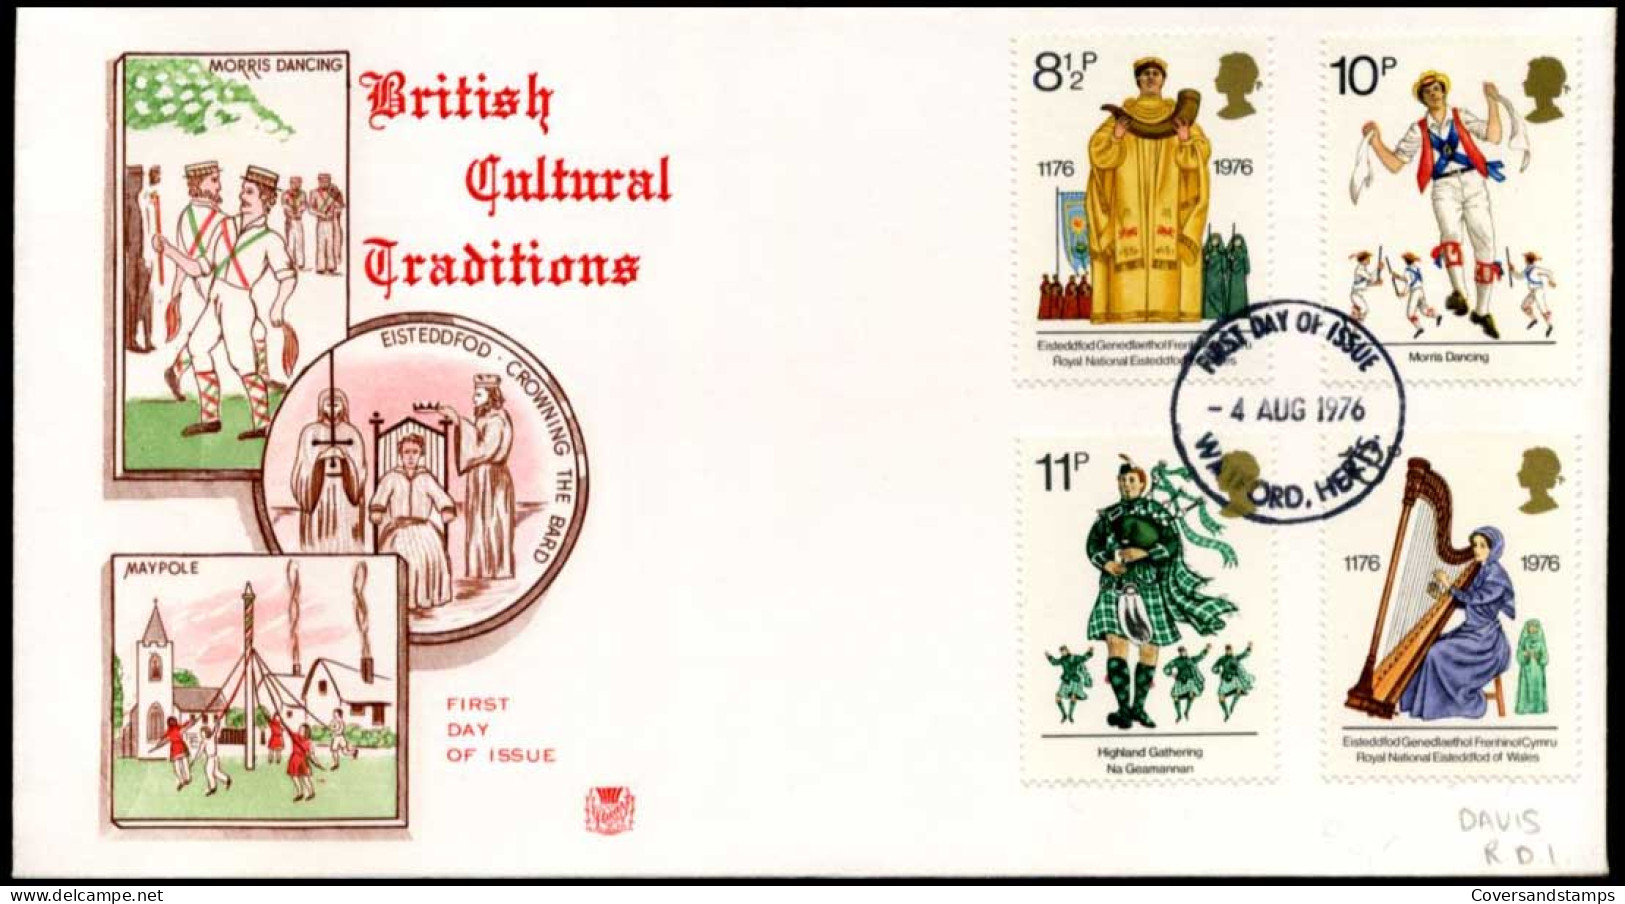 Great-Britain - FDC - British Cultural Traditions - 1971-80 Ediciones Decimal